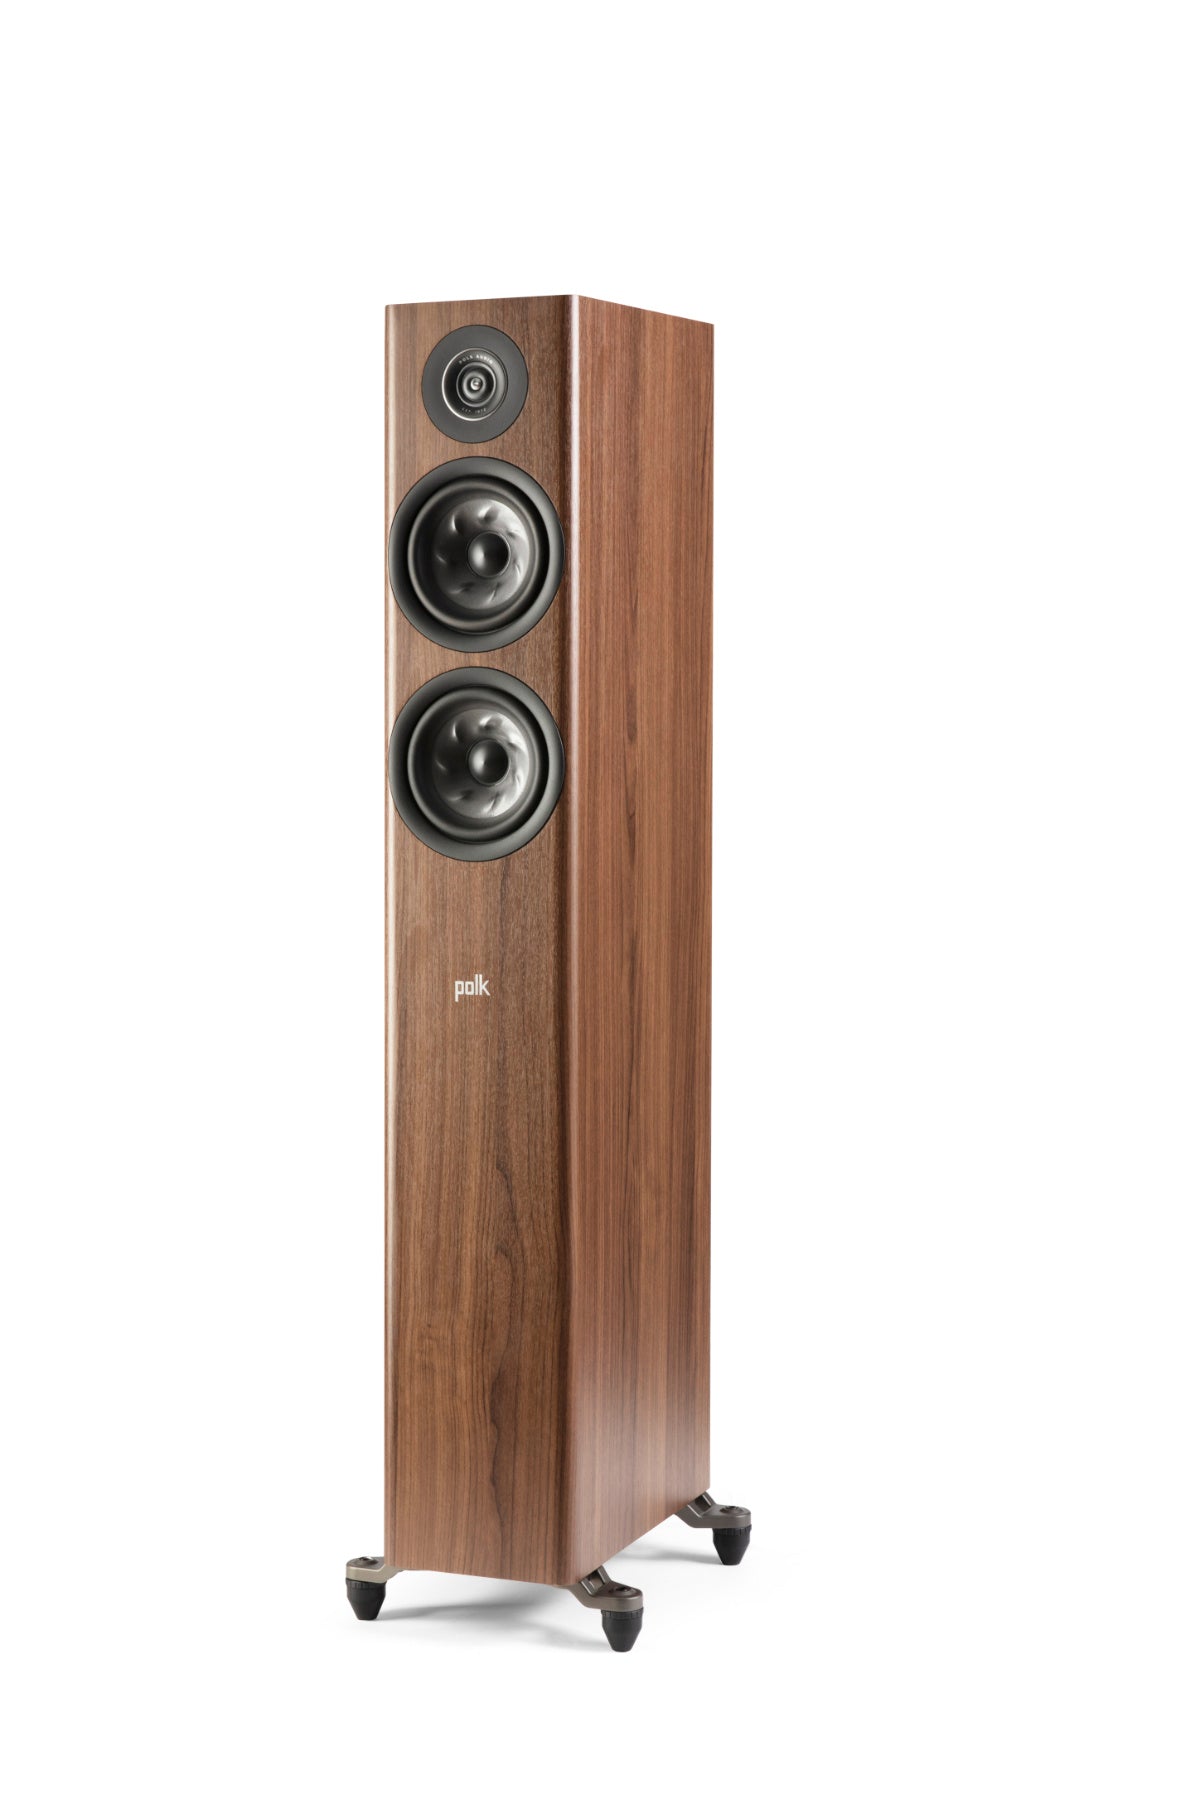 A pair of Polk Audio Reserve R500 floorstanding speakers